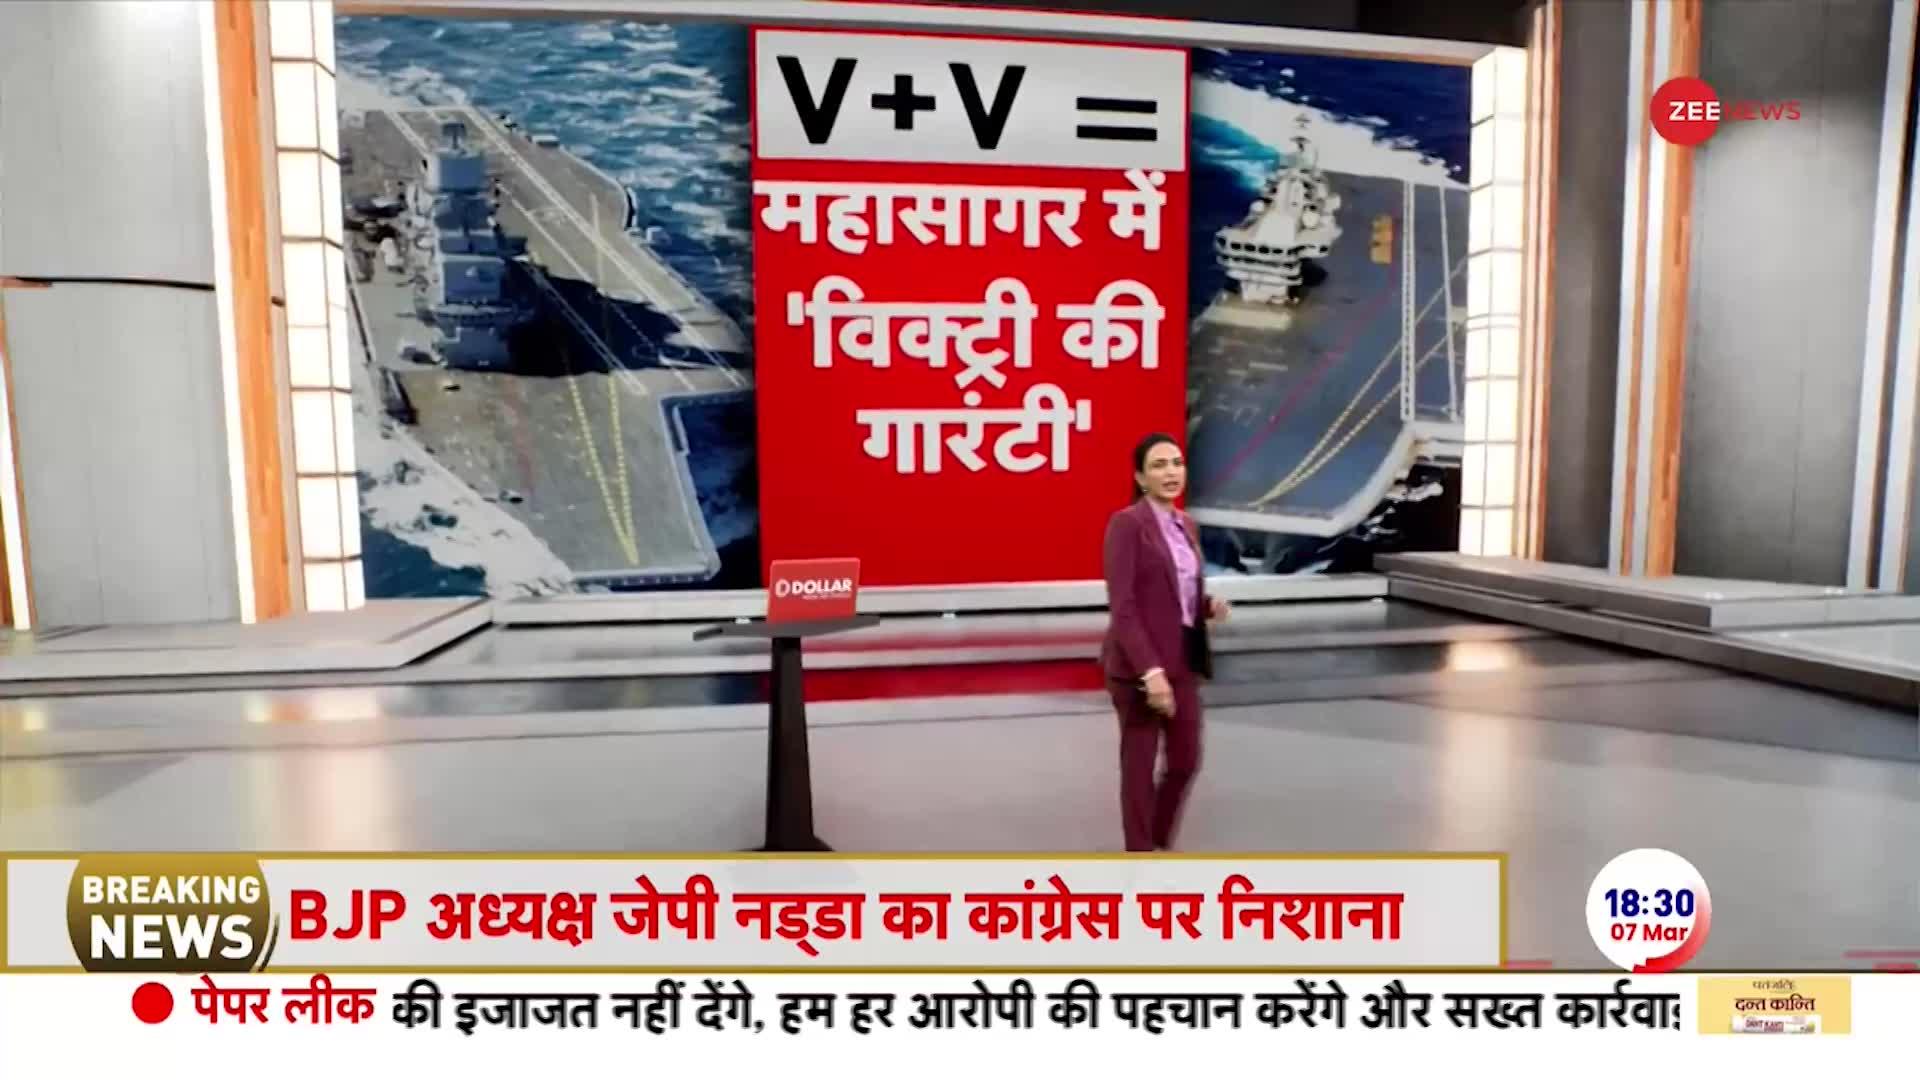 पहली बार साथ आए विक्रमादित्य और विक्रांत | Indian Navy News